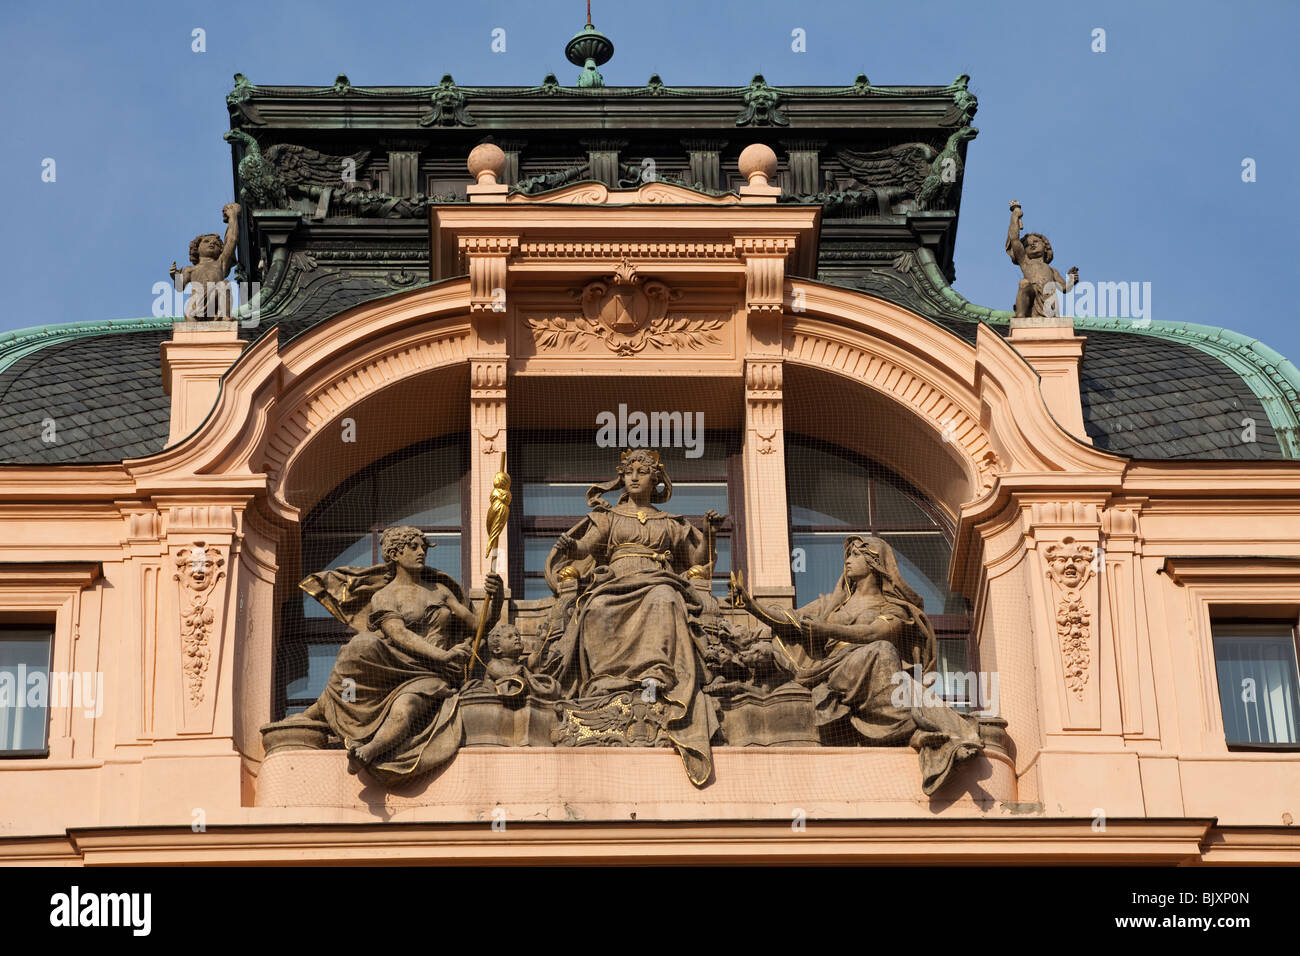 Immeuble en style néo baroque, Wenceslas Square, Prague, République Tchèque Banque D'Images